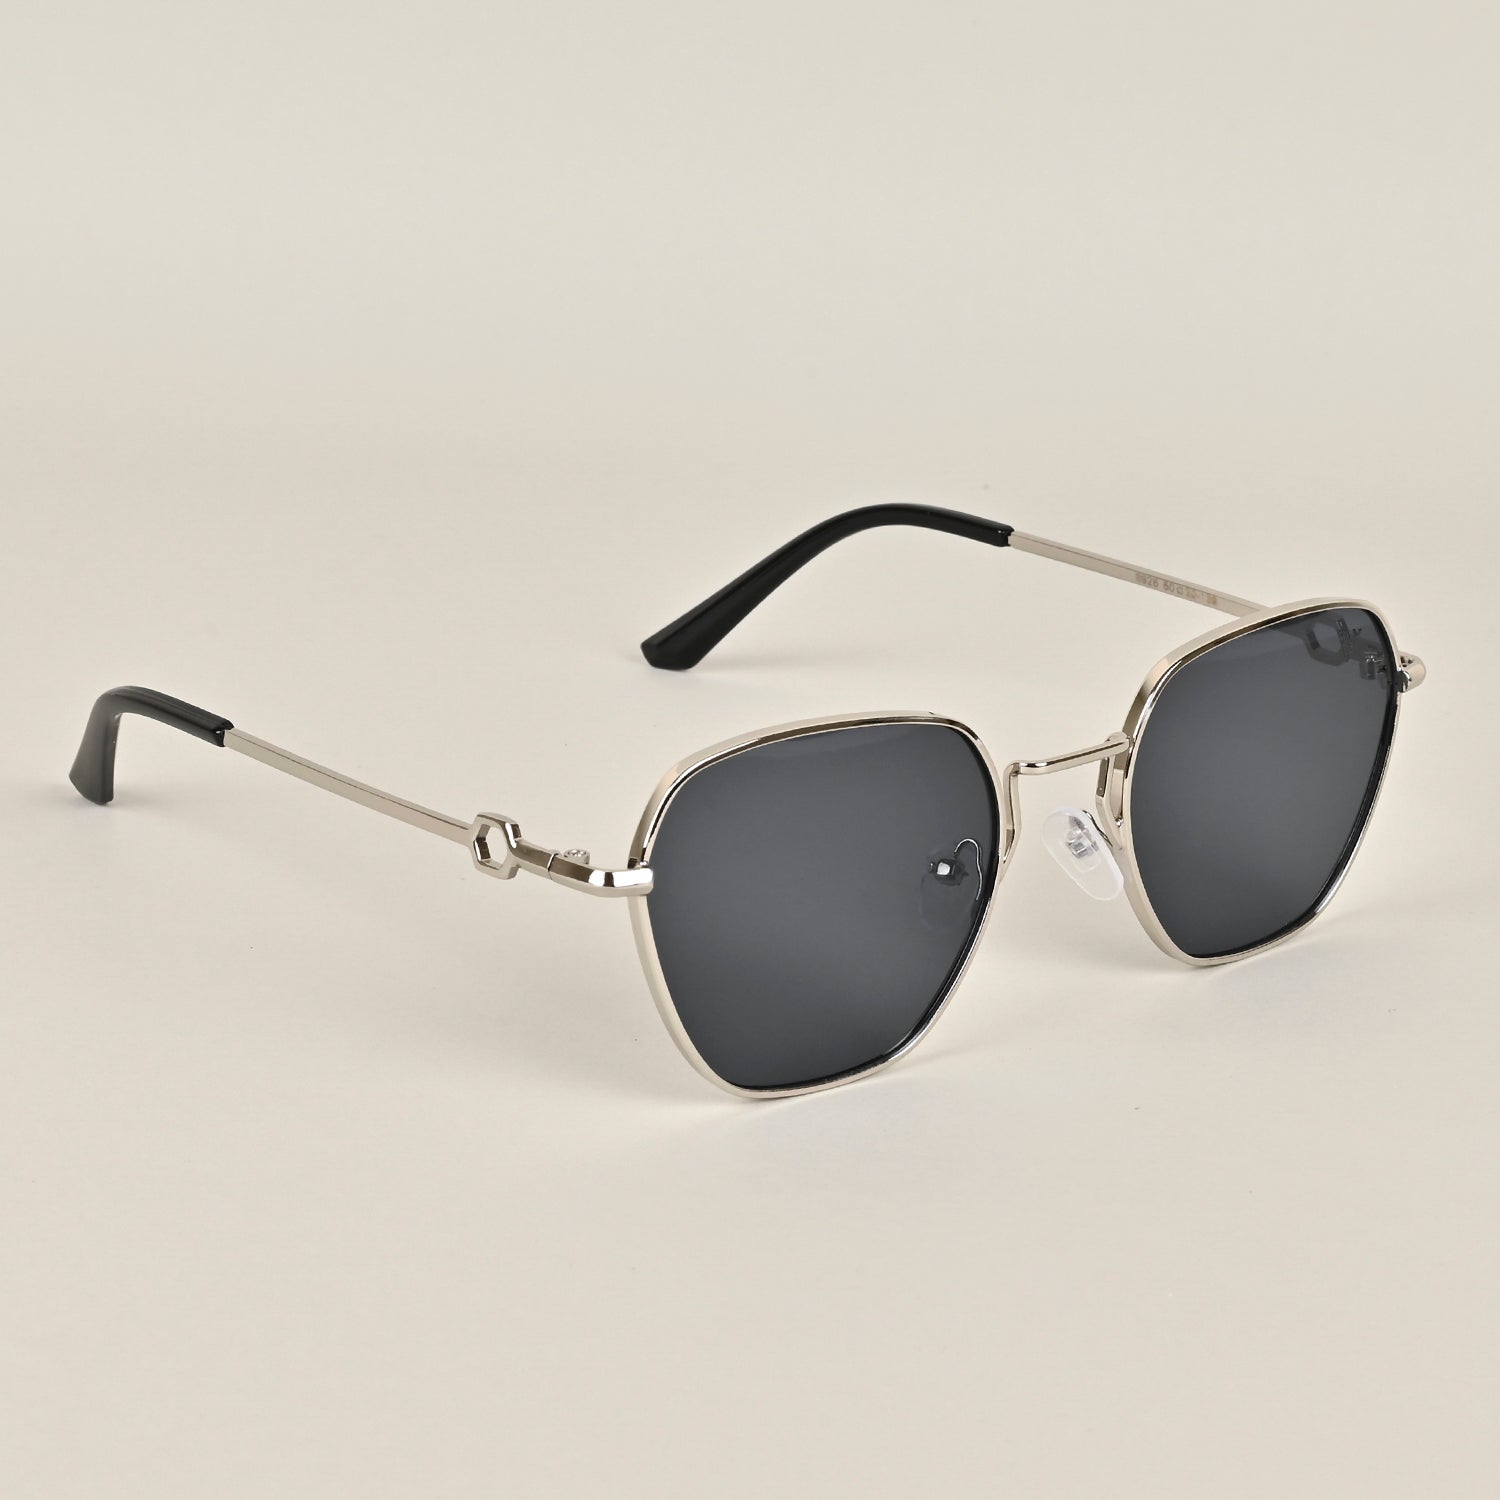 Voyage Silver-Black Retro Square Sunglasses MG2778